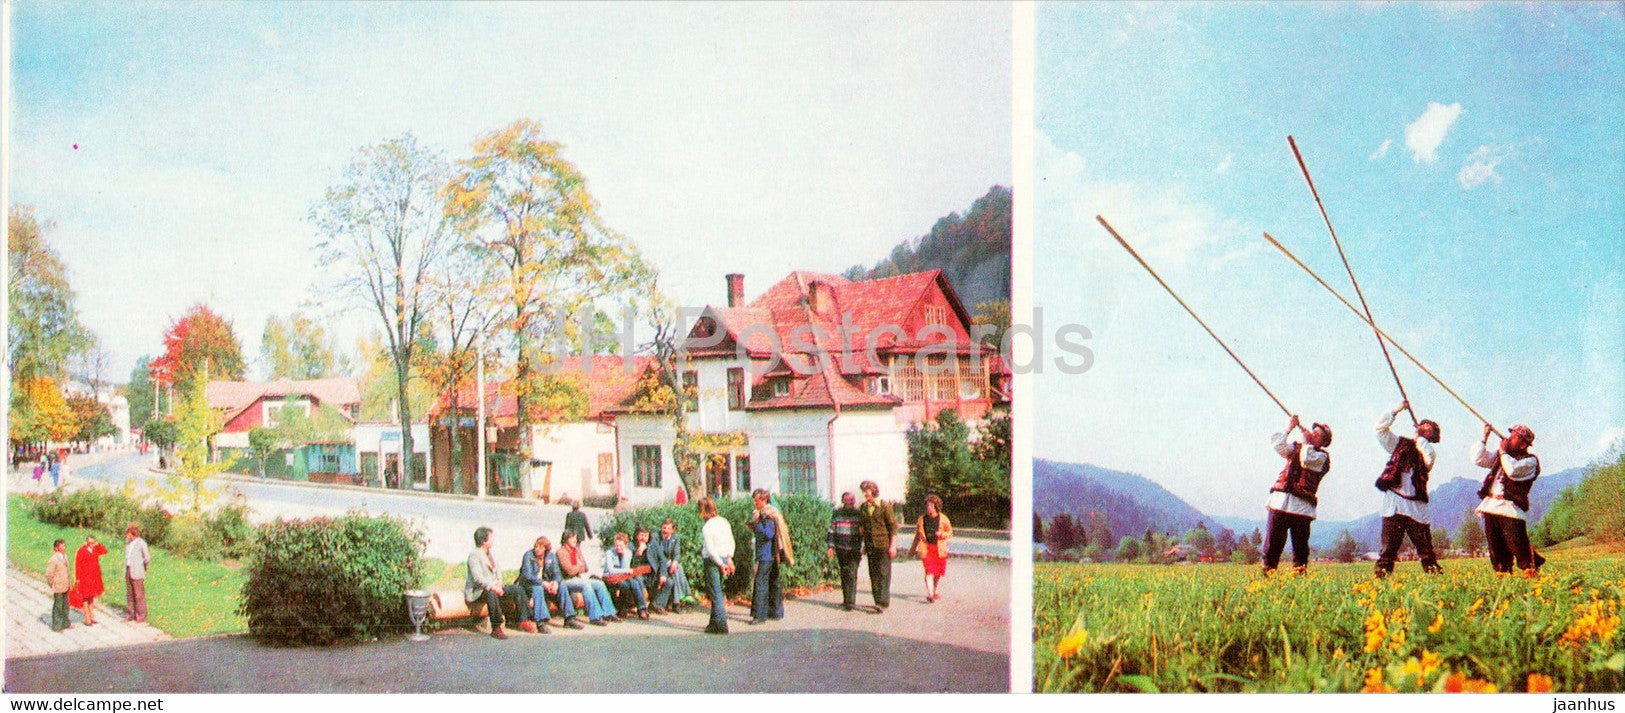 Yaremche - Lenin street - Hutsul trumpet - folk music - Hutsul Region - 1980 - Ukraine USSR - unused - JH Postcards